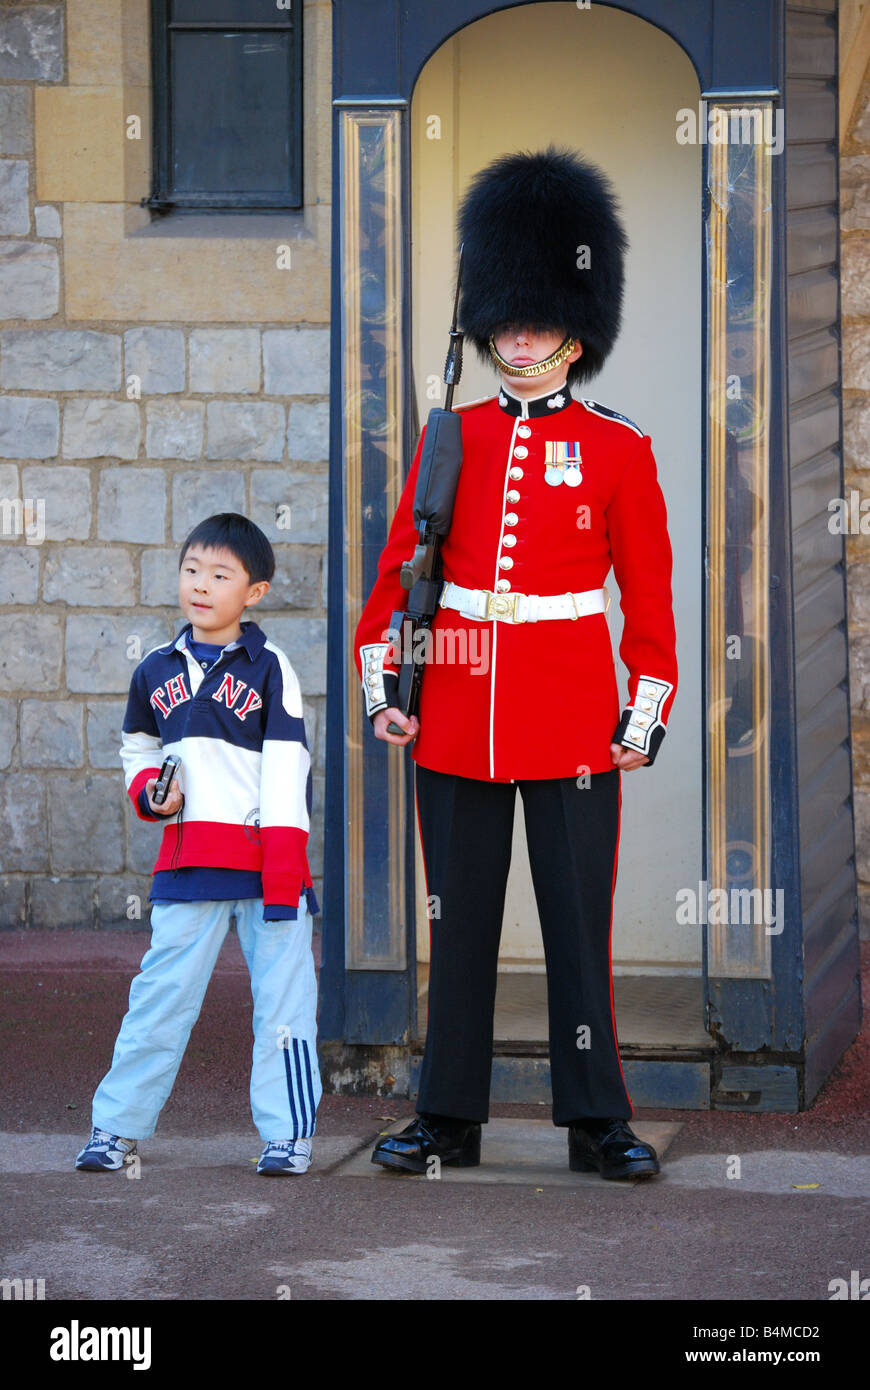 Queen S Guard Uniform 10